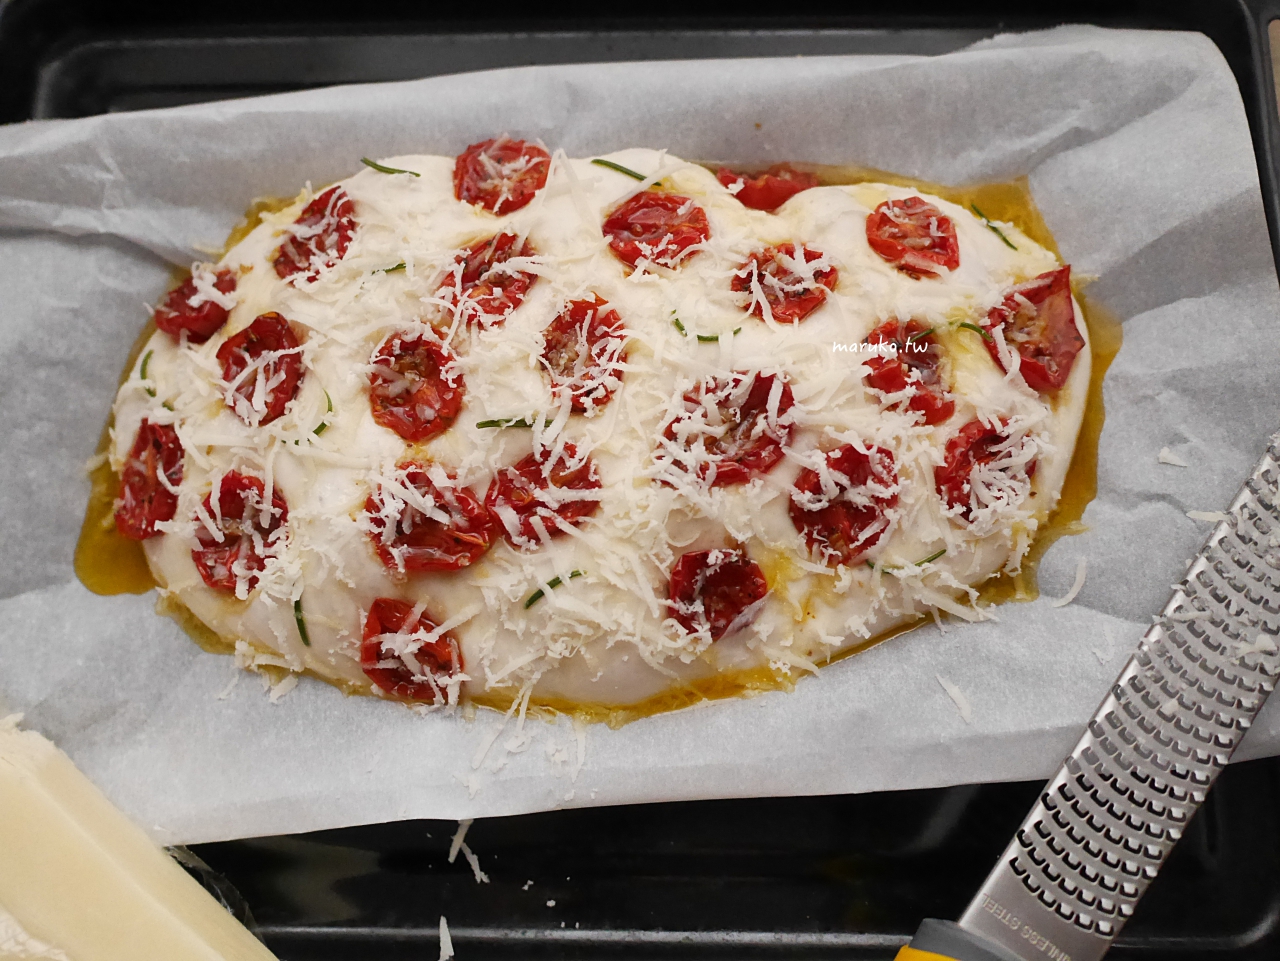 【食譜】油漬番茄 只要三步驟輕鬆做義式橄欖油番茄 配麵包或義大利麵都適合 @Maruko與美食有個約會